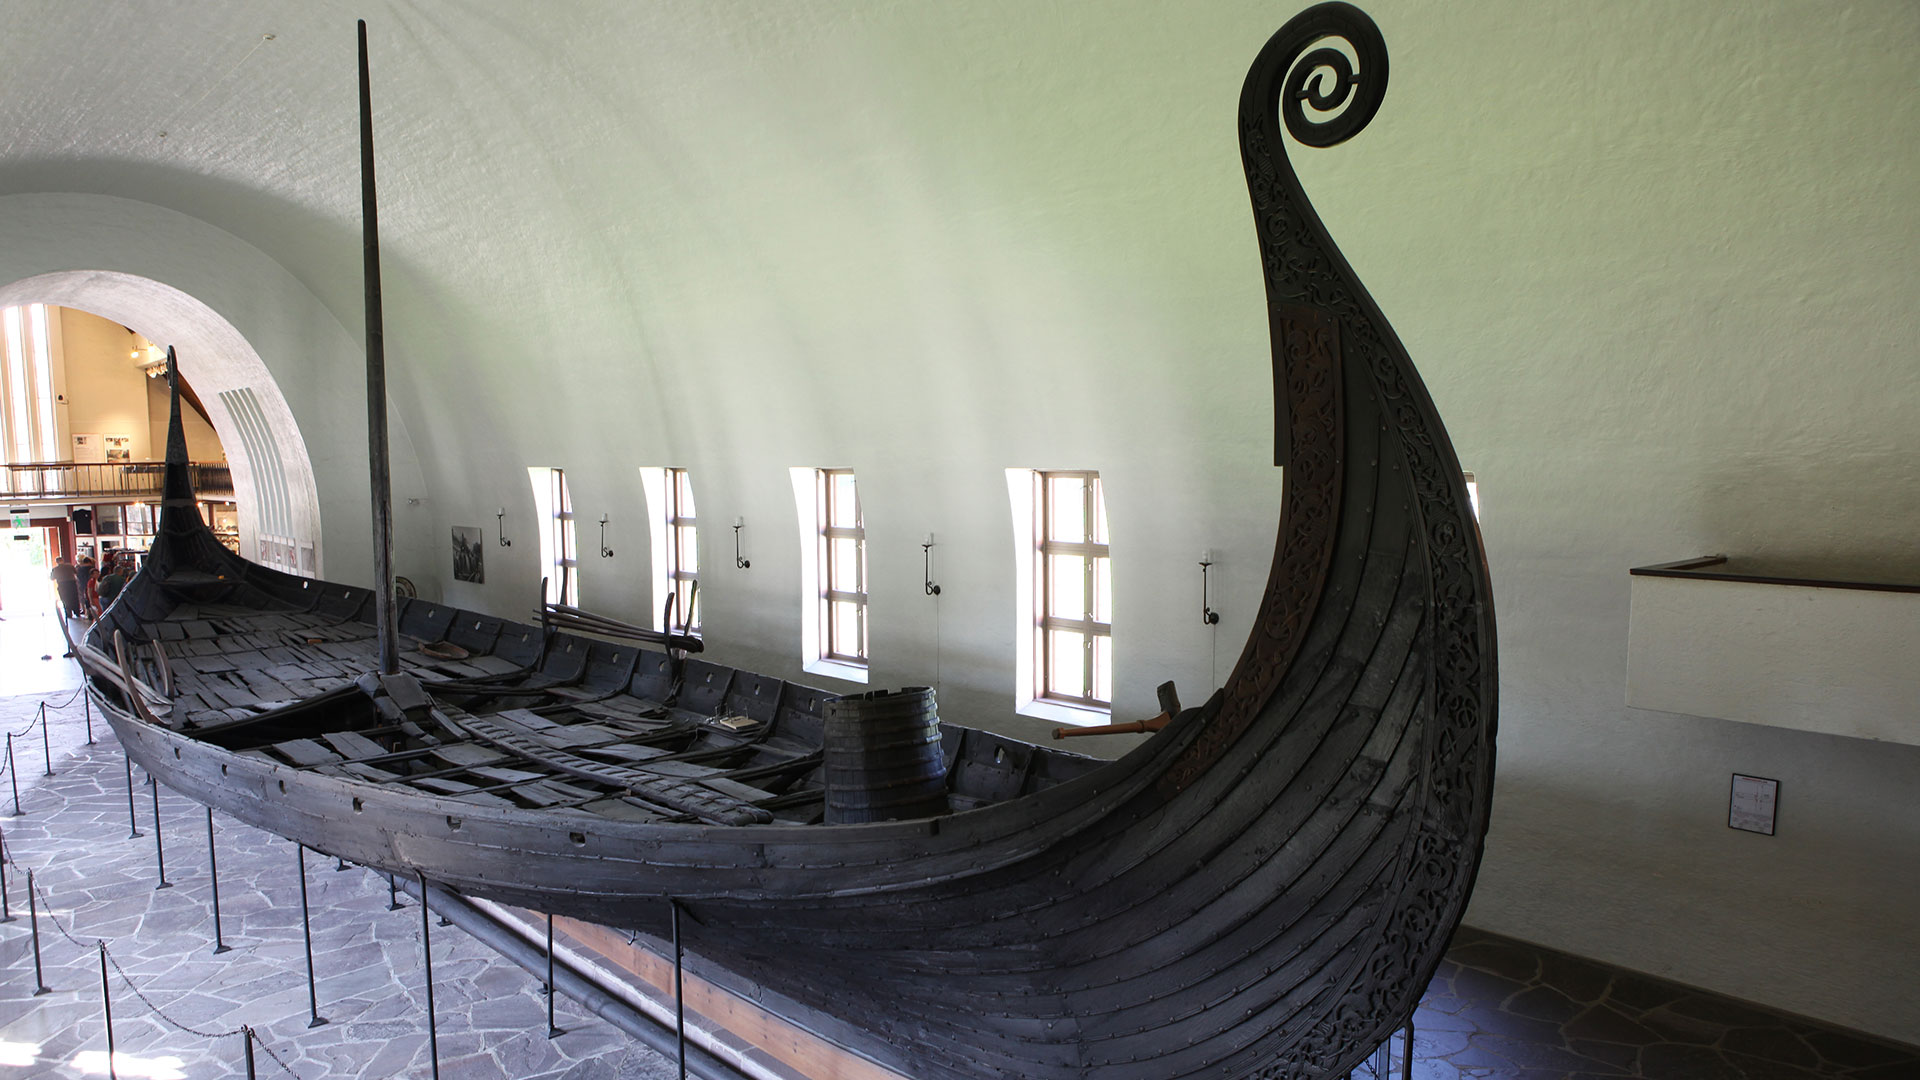 Viking Museum in Oslo, Norway